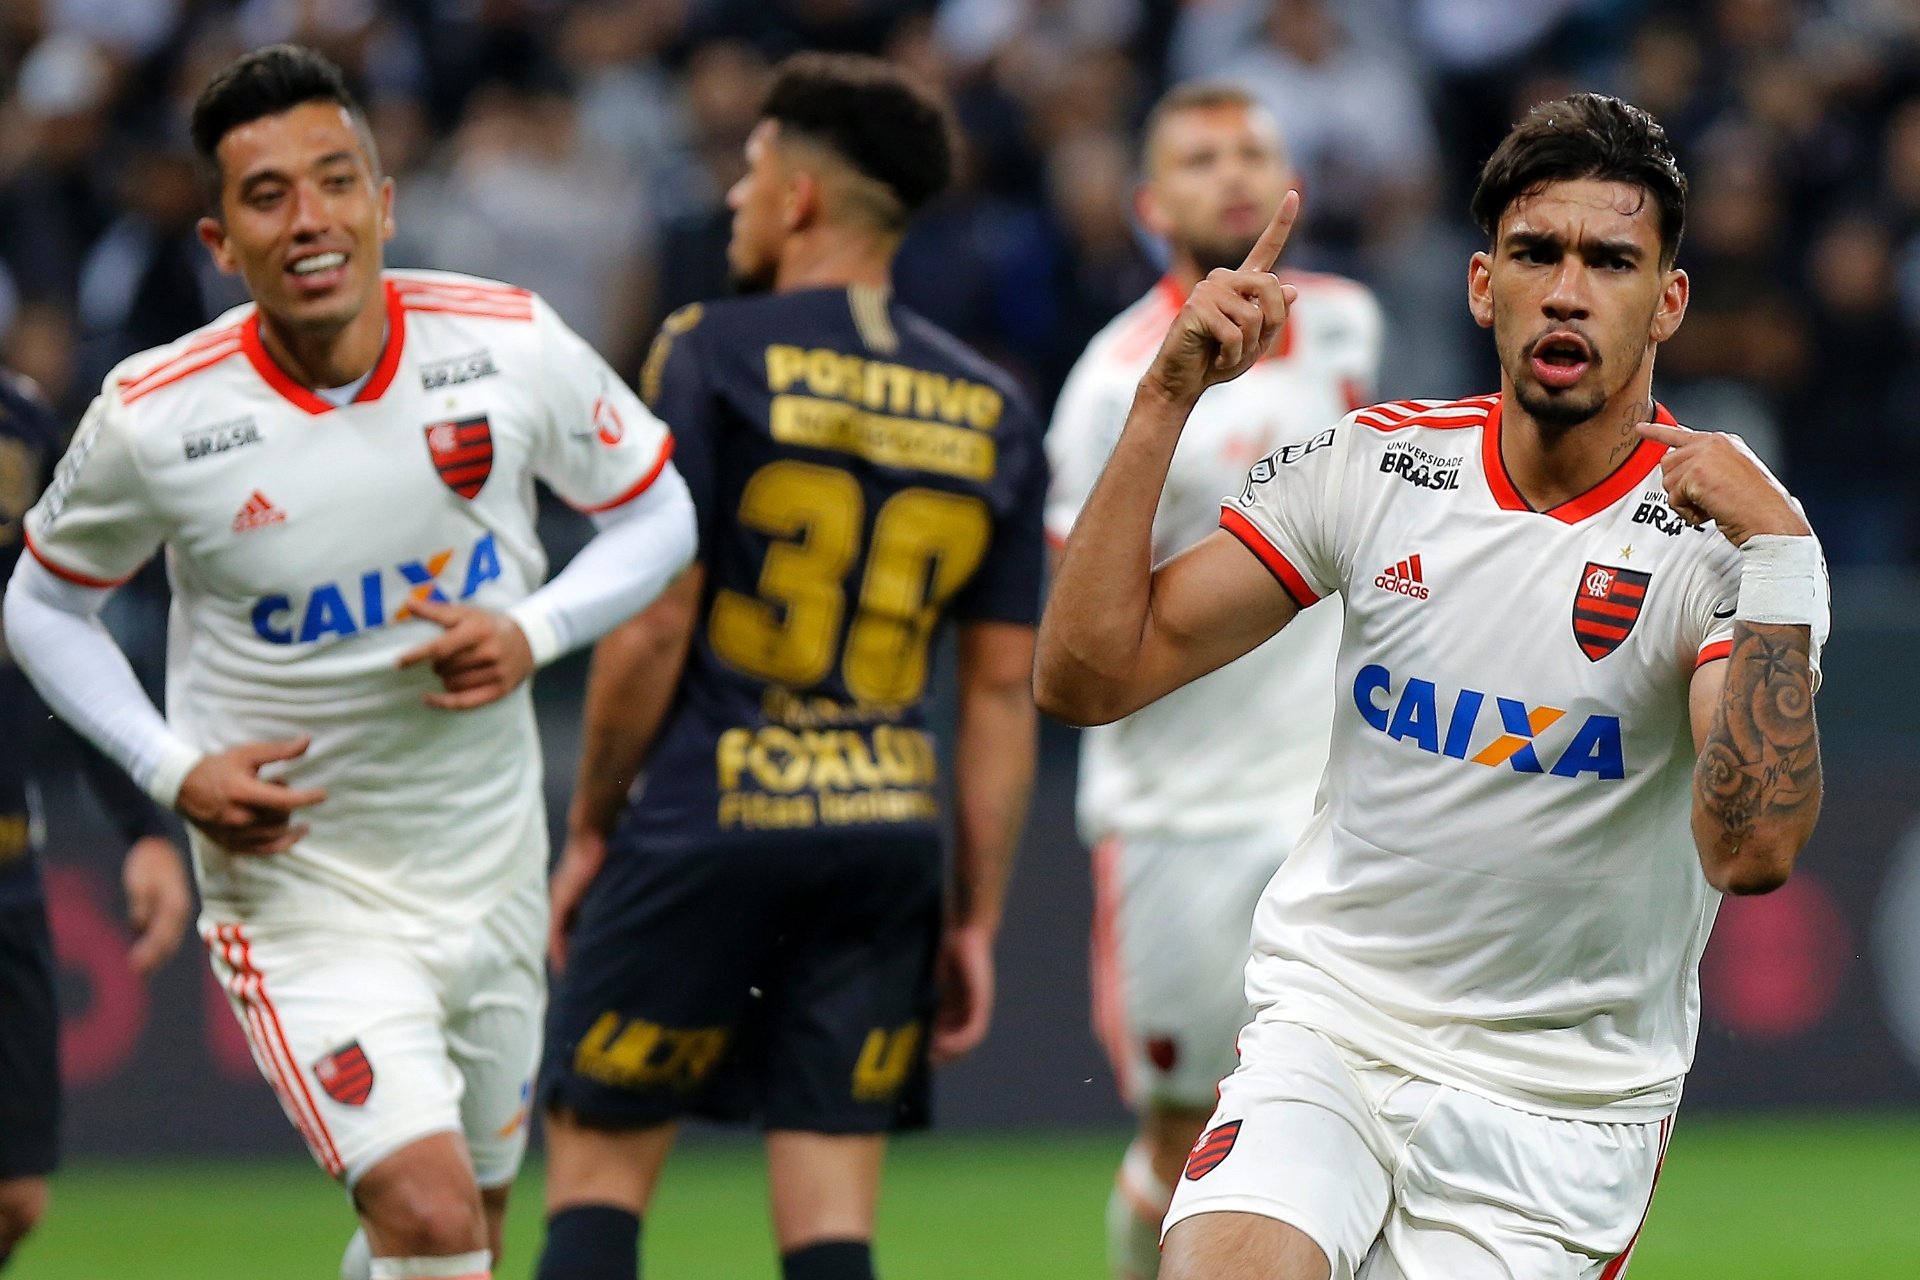 2018 - Após um bom início de campeonato, o Flamengo caiu de produção e ocupava a terceira colocação, com 52 pontos, a quatro do líder. Naquela temporada, o clube acabou como vice-líder, com 72 pontos.